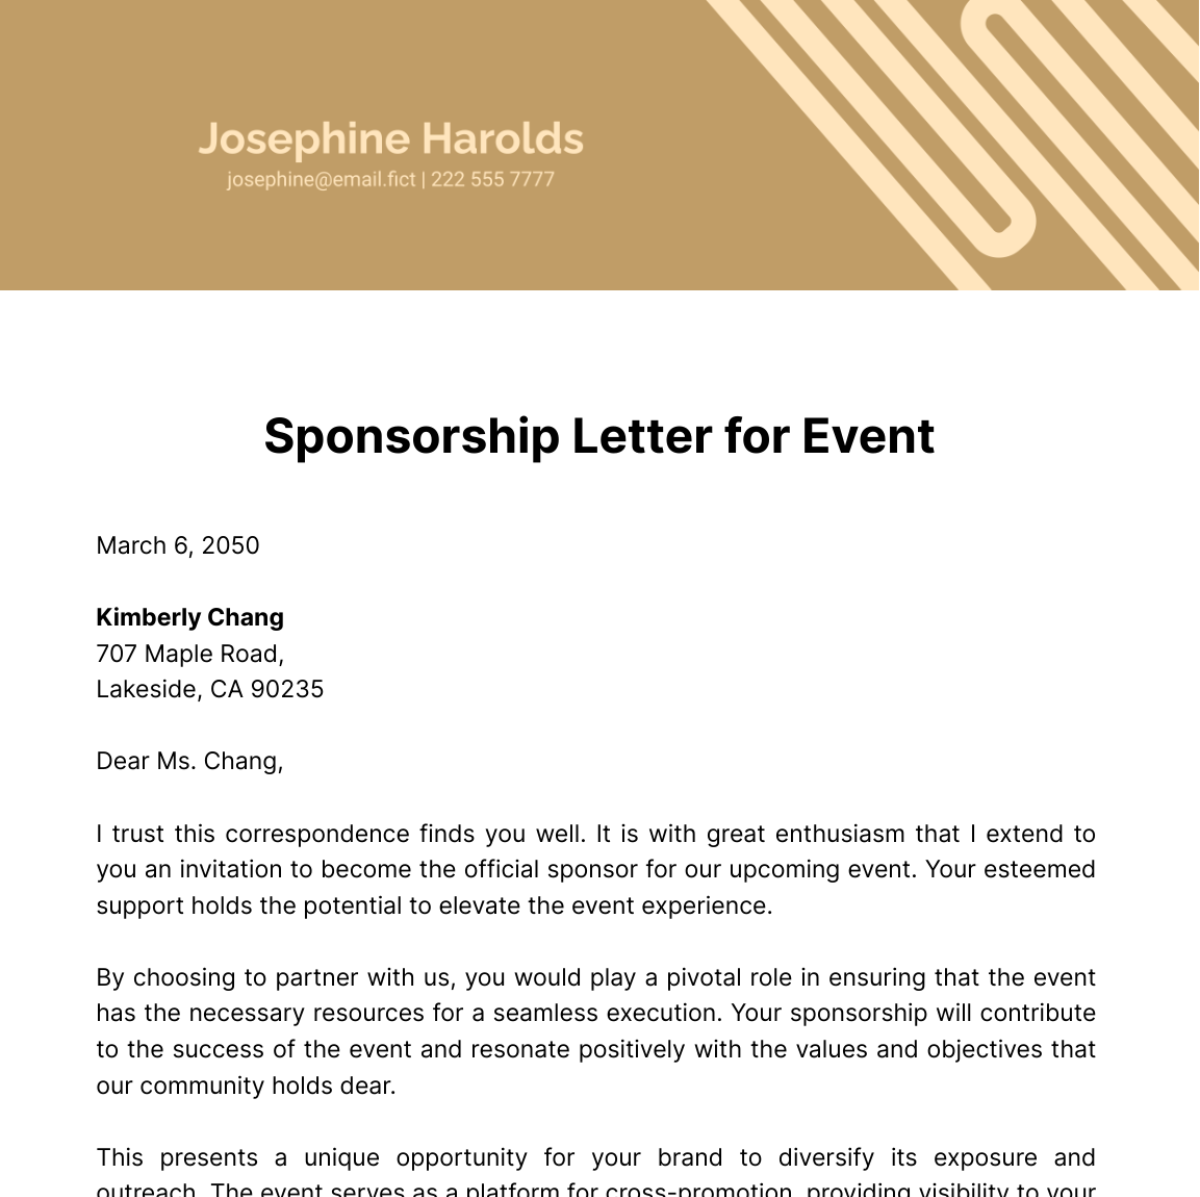 Sponsorship Letter for Event Template